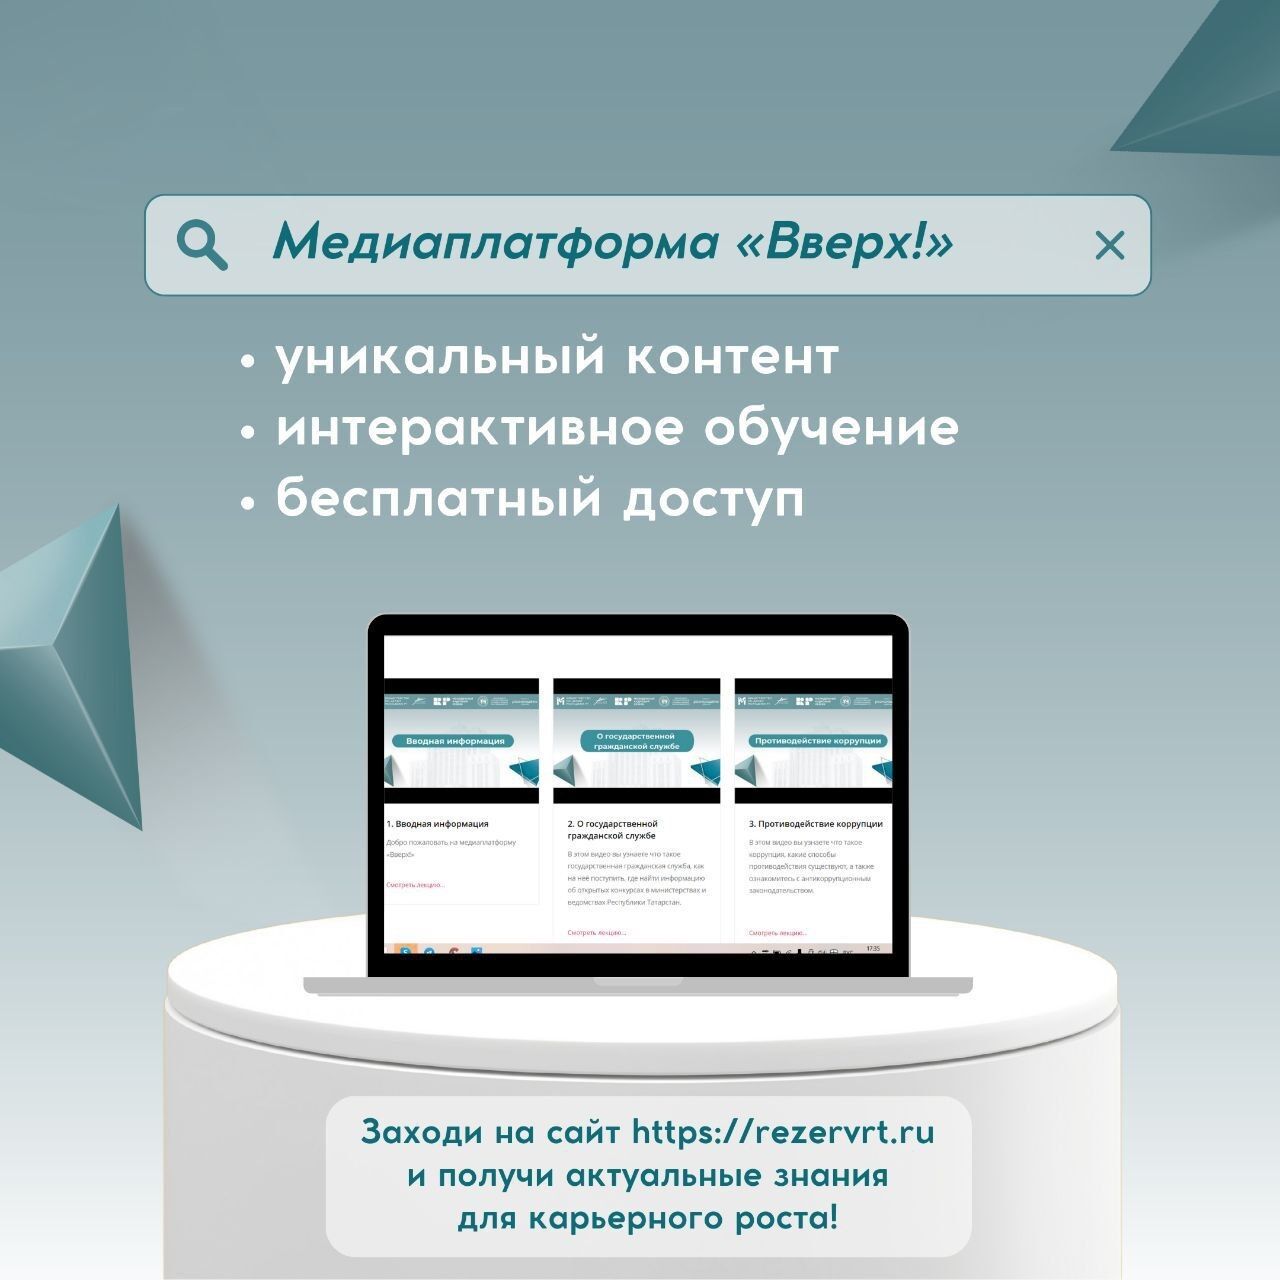 Молодежь Республики Татарстан запускает медиаплатформу «Вверх!»